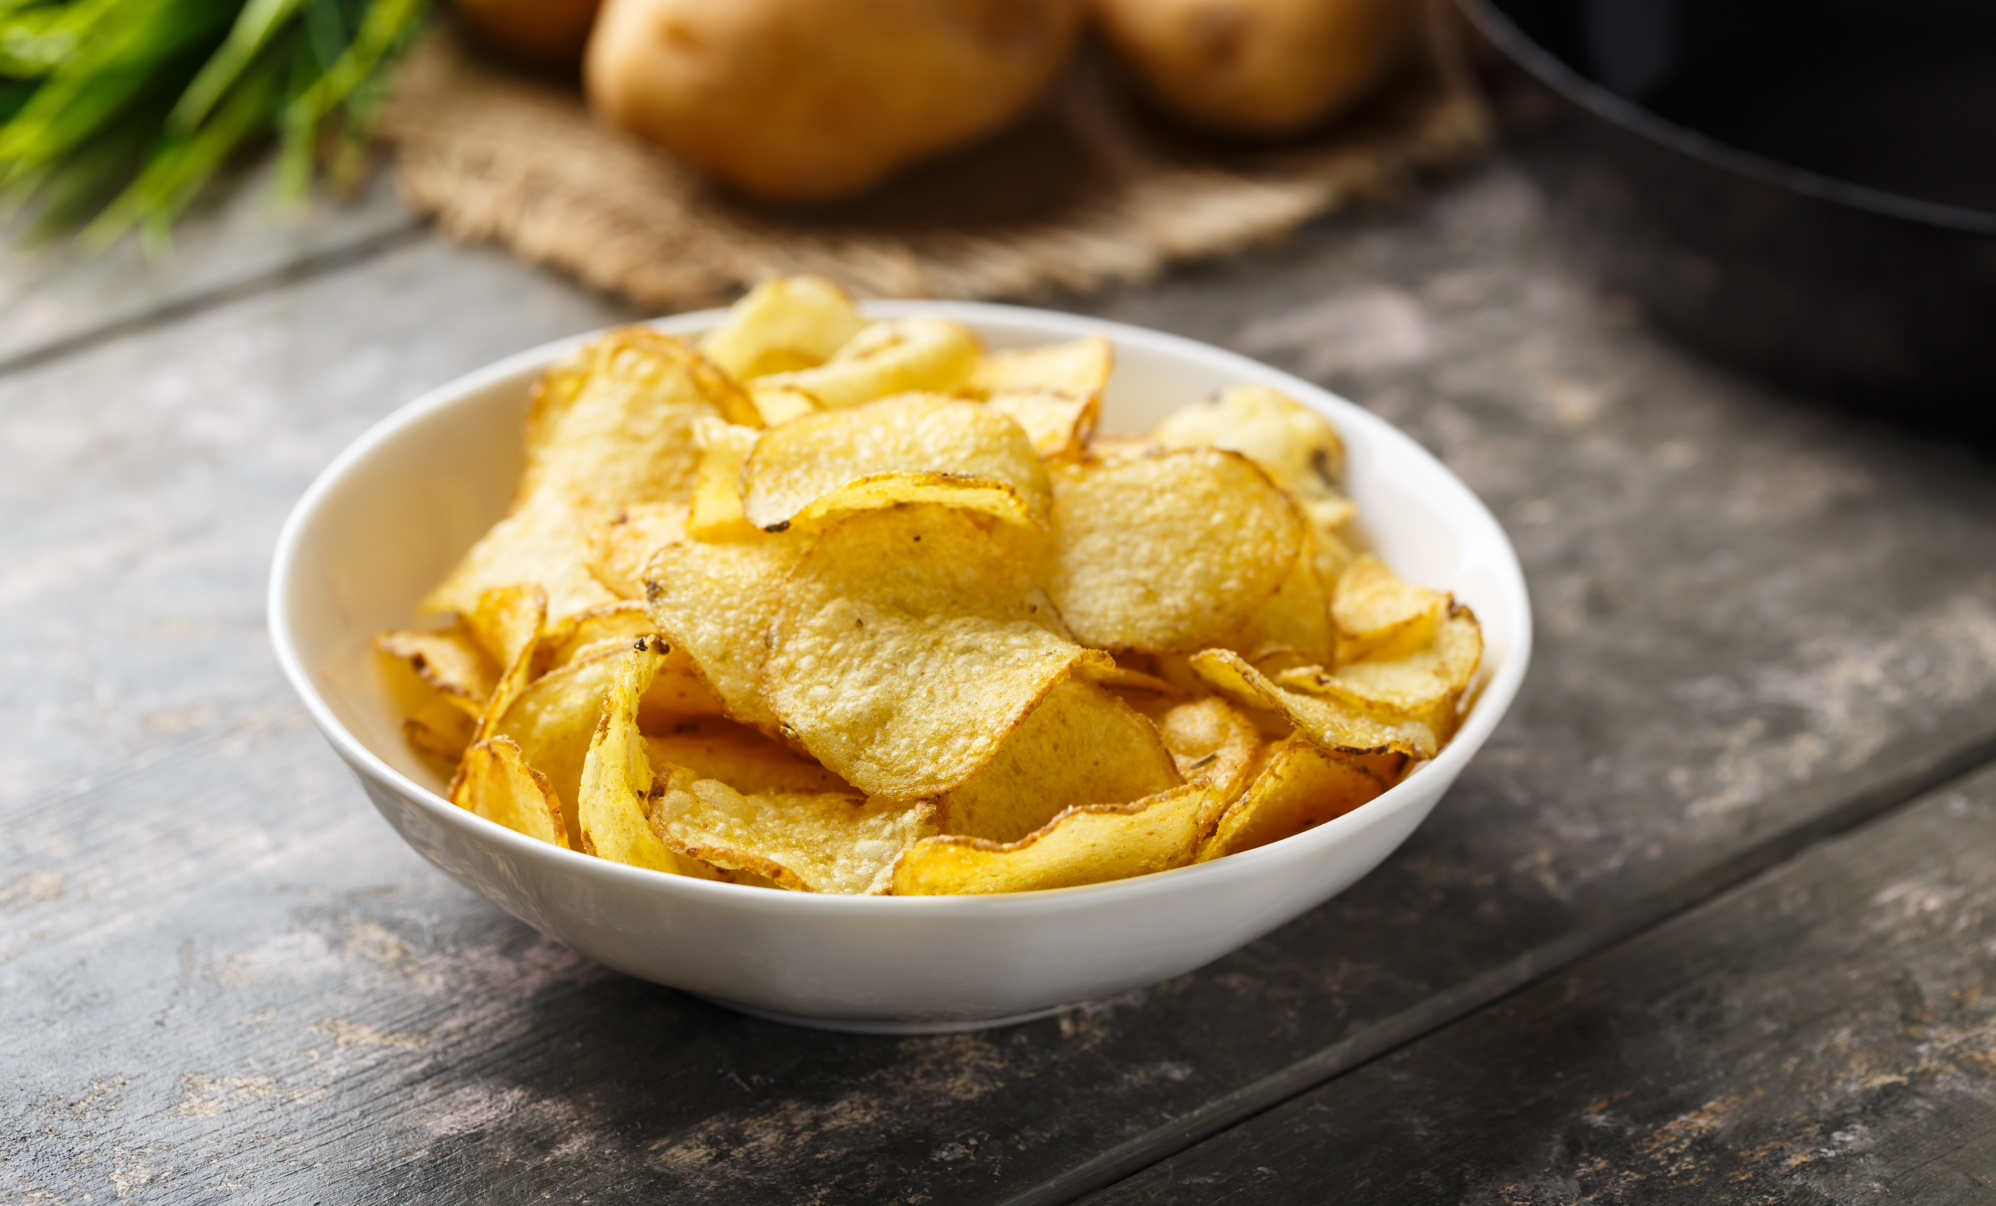 Planificado estudiante universitario lucha Patatas fritas artesanales: cómo se fabrica y cocina este delicioso snack